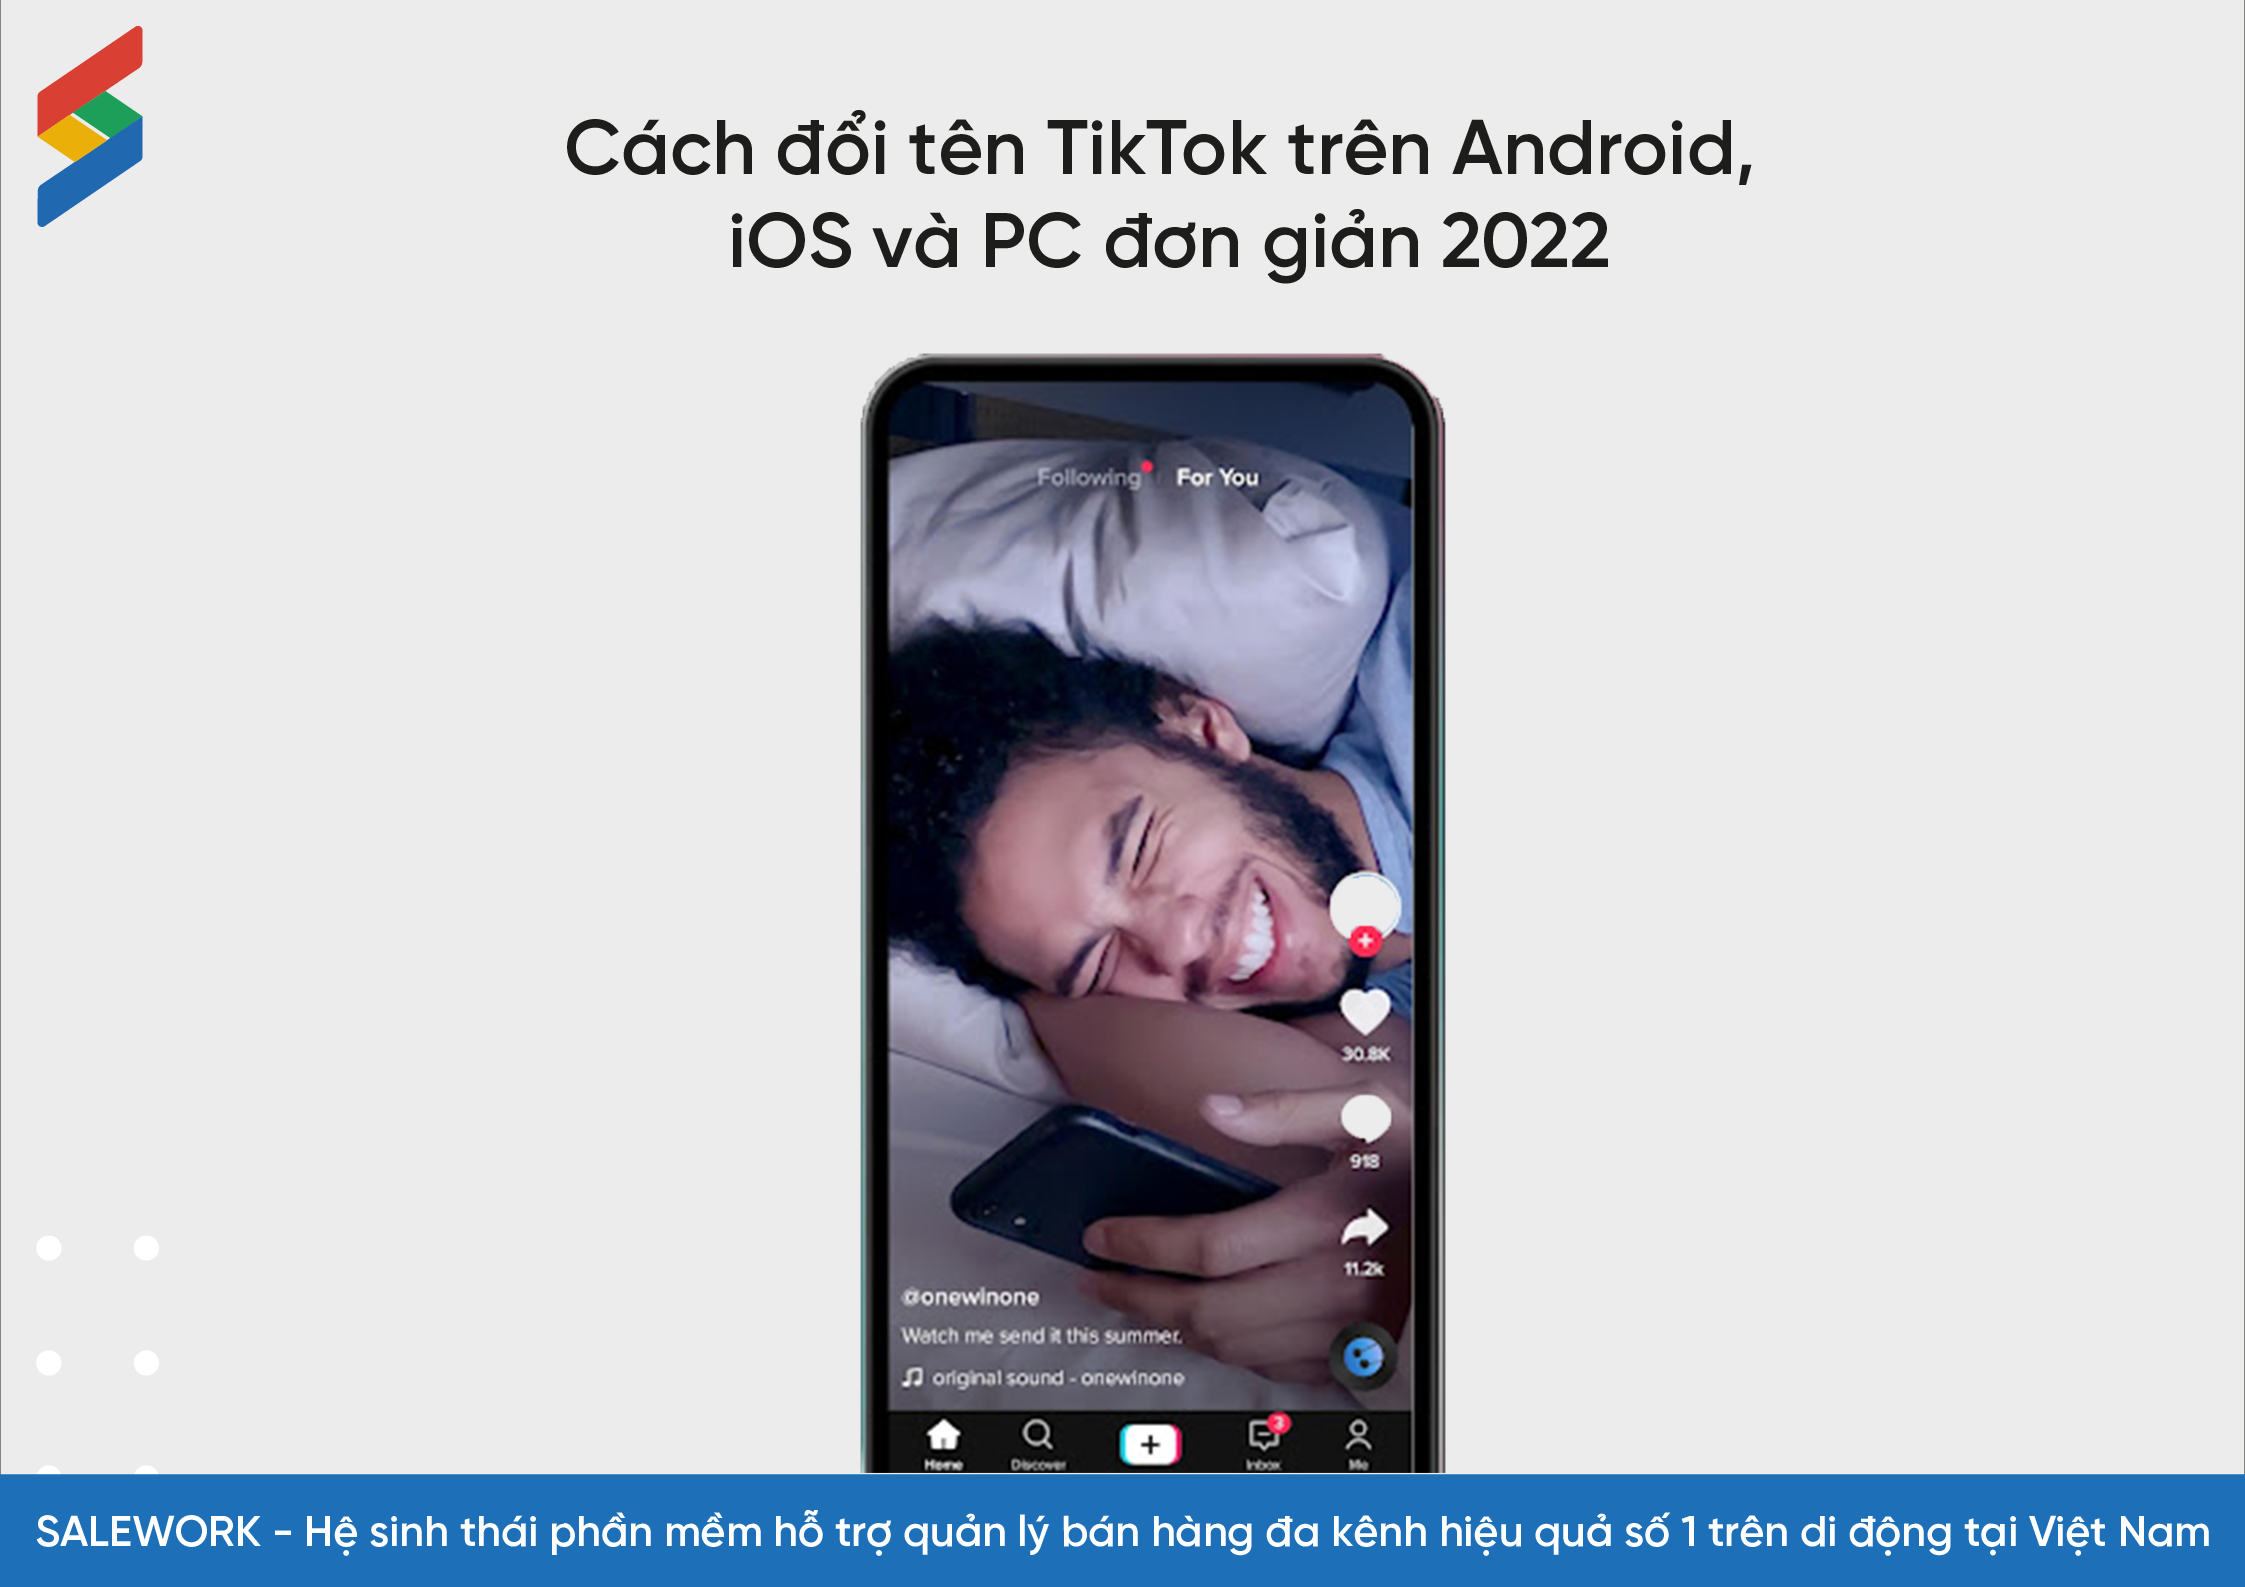 Cách đổi tên TikTok trên Android, iOS và PC đơn giản dễ làm - 13